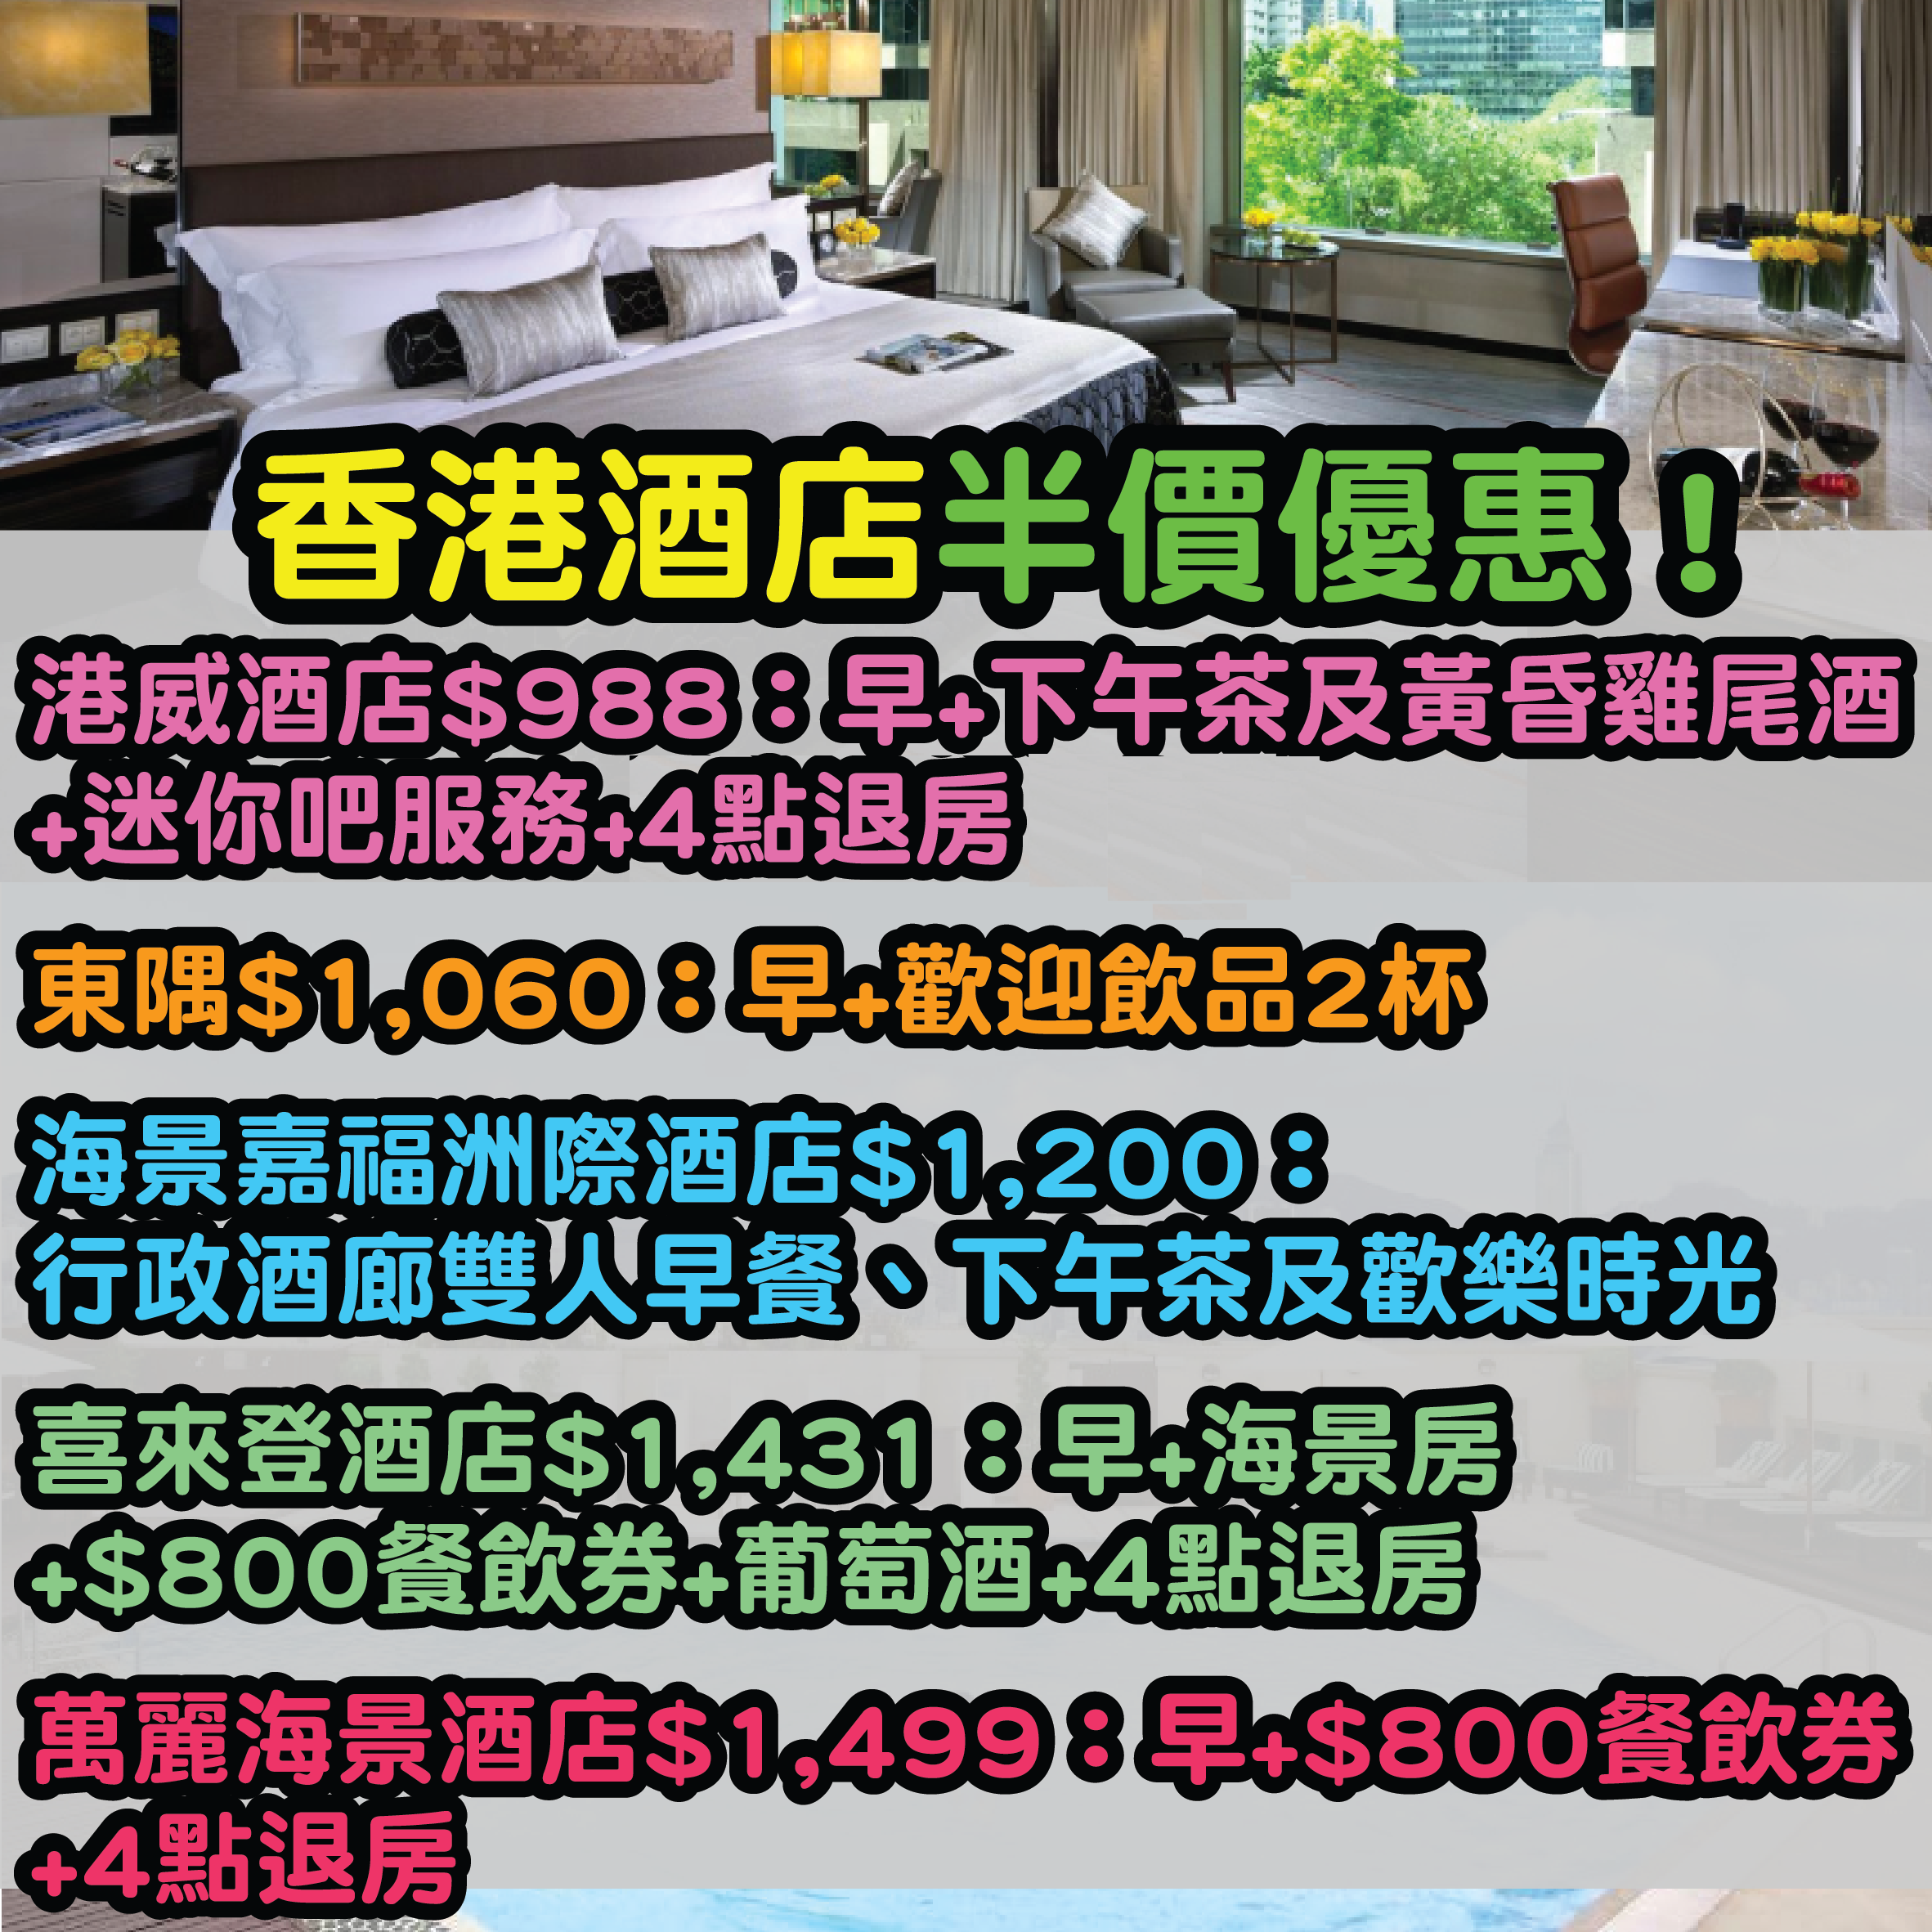 限時優惠！香港酒店低至5折優惠！入住日期可以去到下年2月21日！仲可以免費取消！